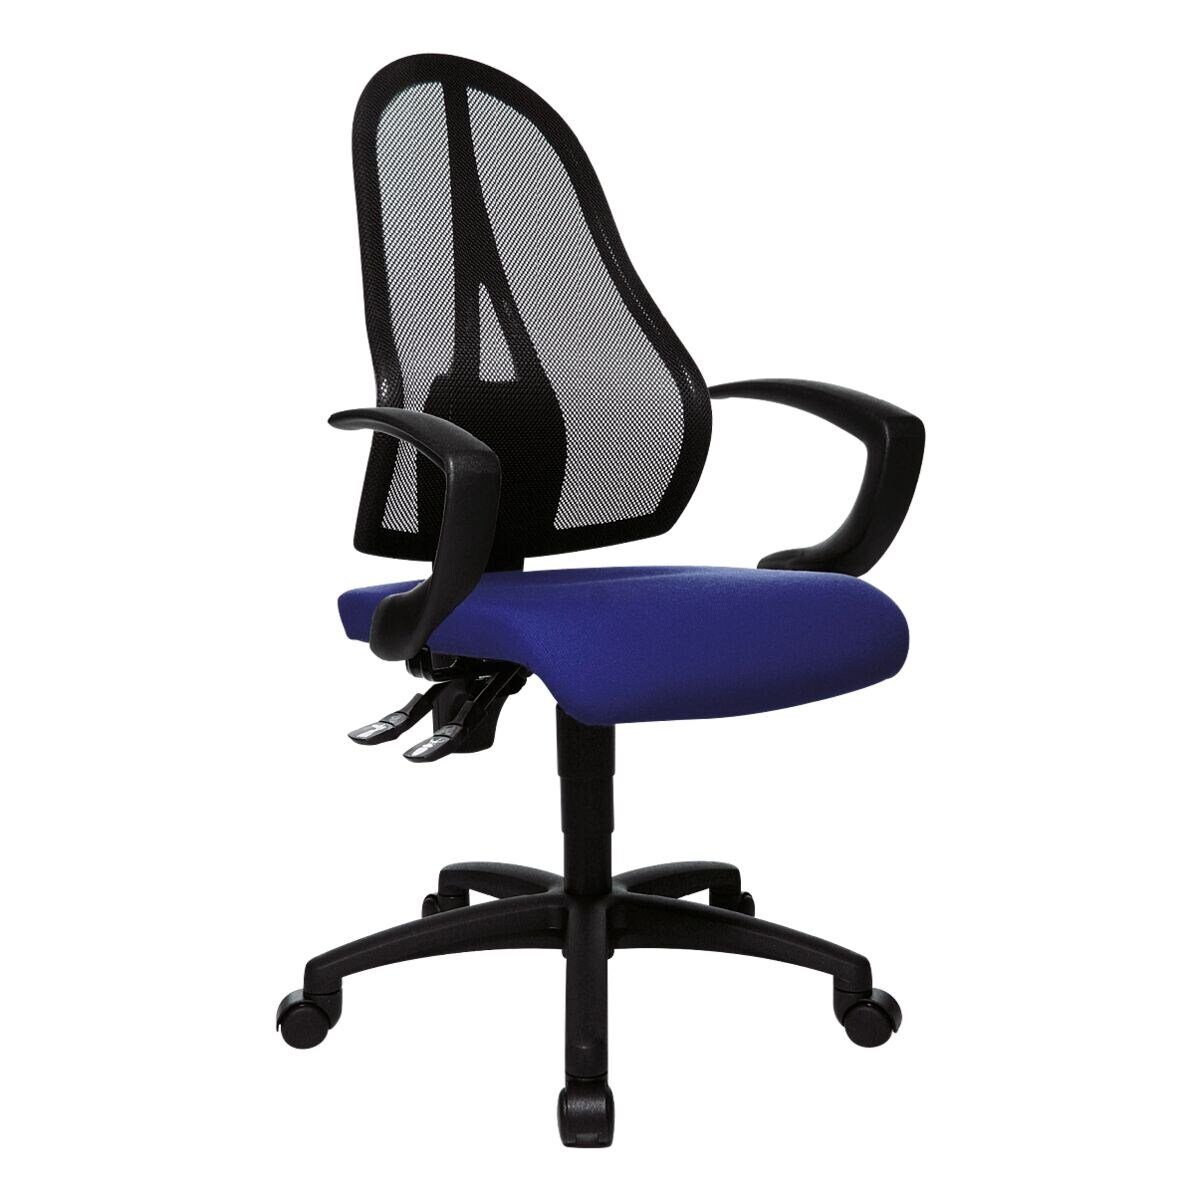 beliebt günstig TOPSTAR Schreibtischstuhl Open mit Netzrücken, Knierolle und ergonomischem Point P, blau (ohne Armlehnen)